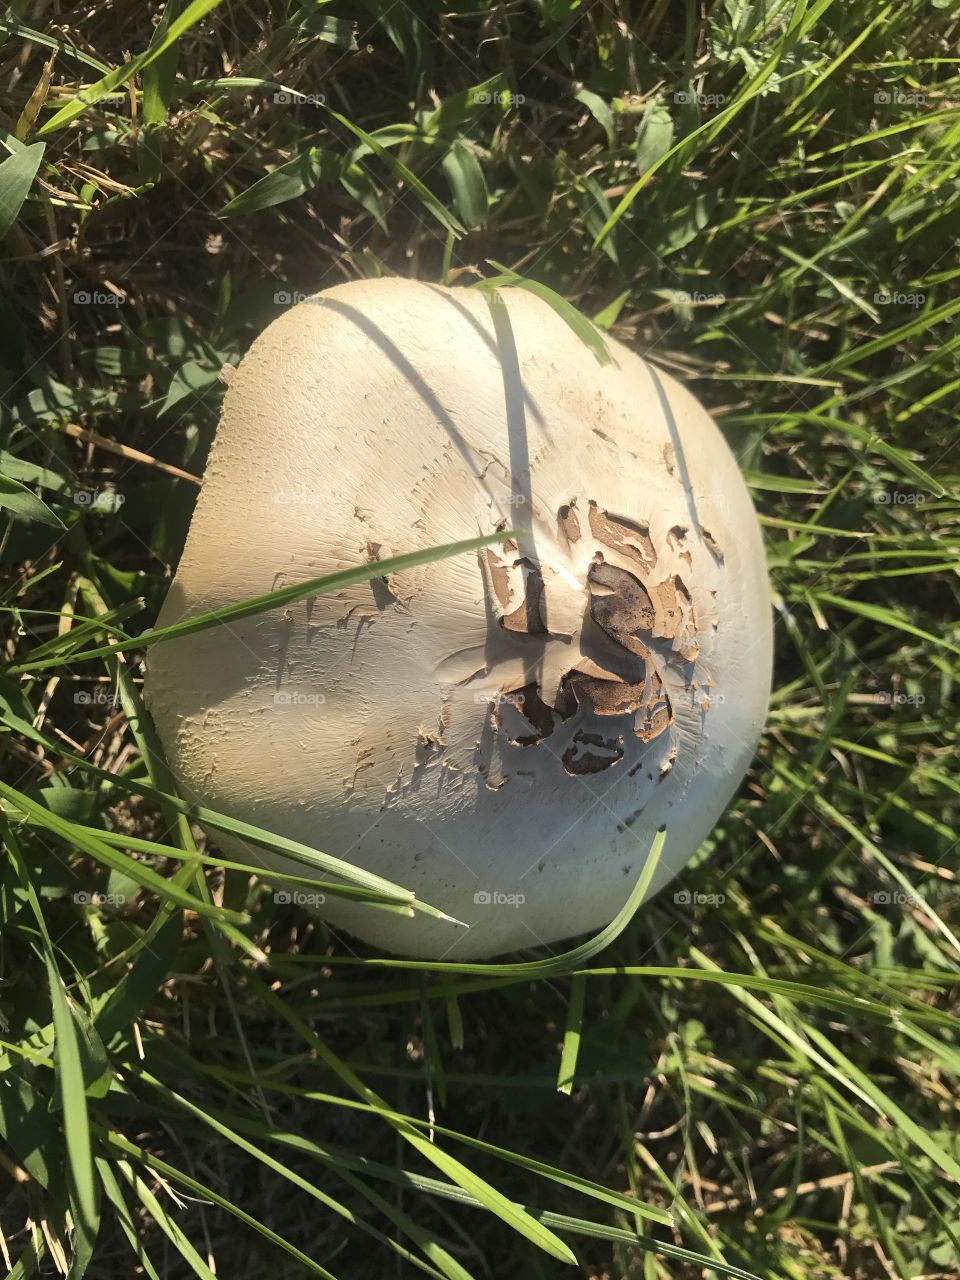 A mushroom with an odd top